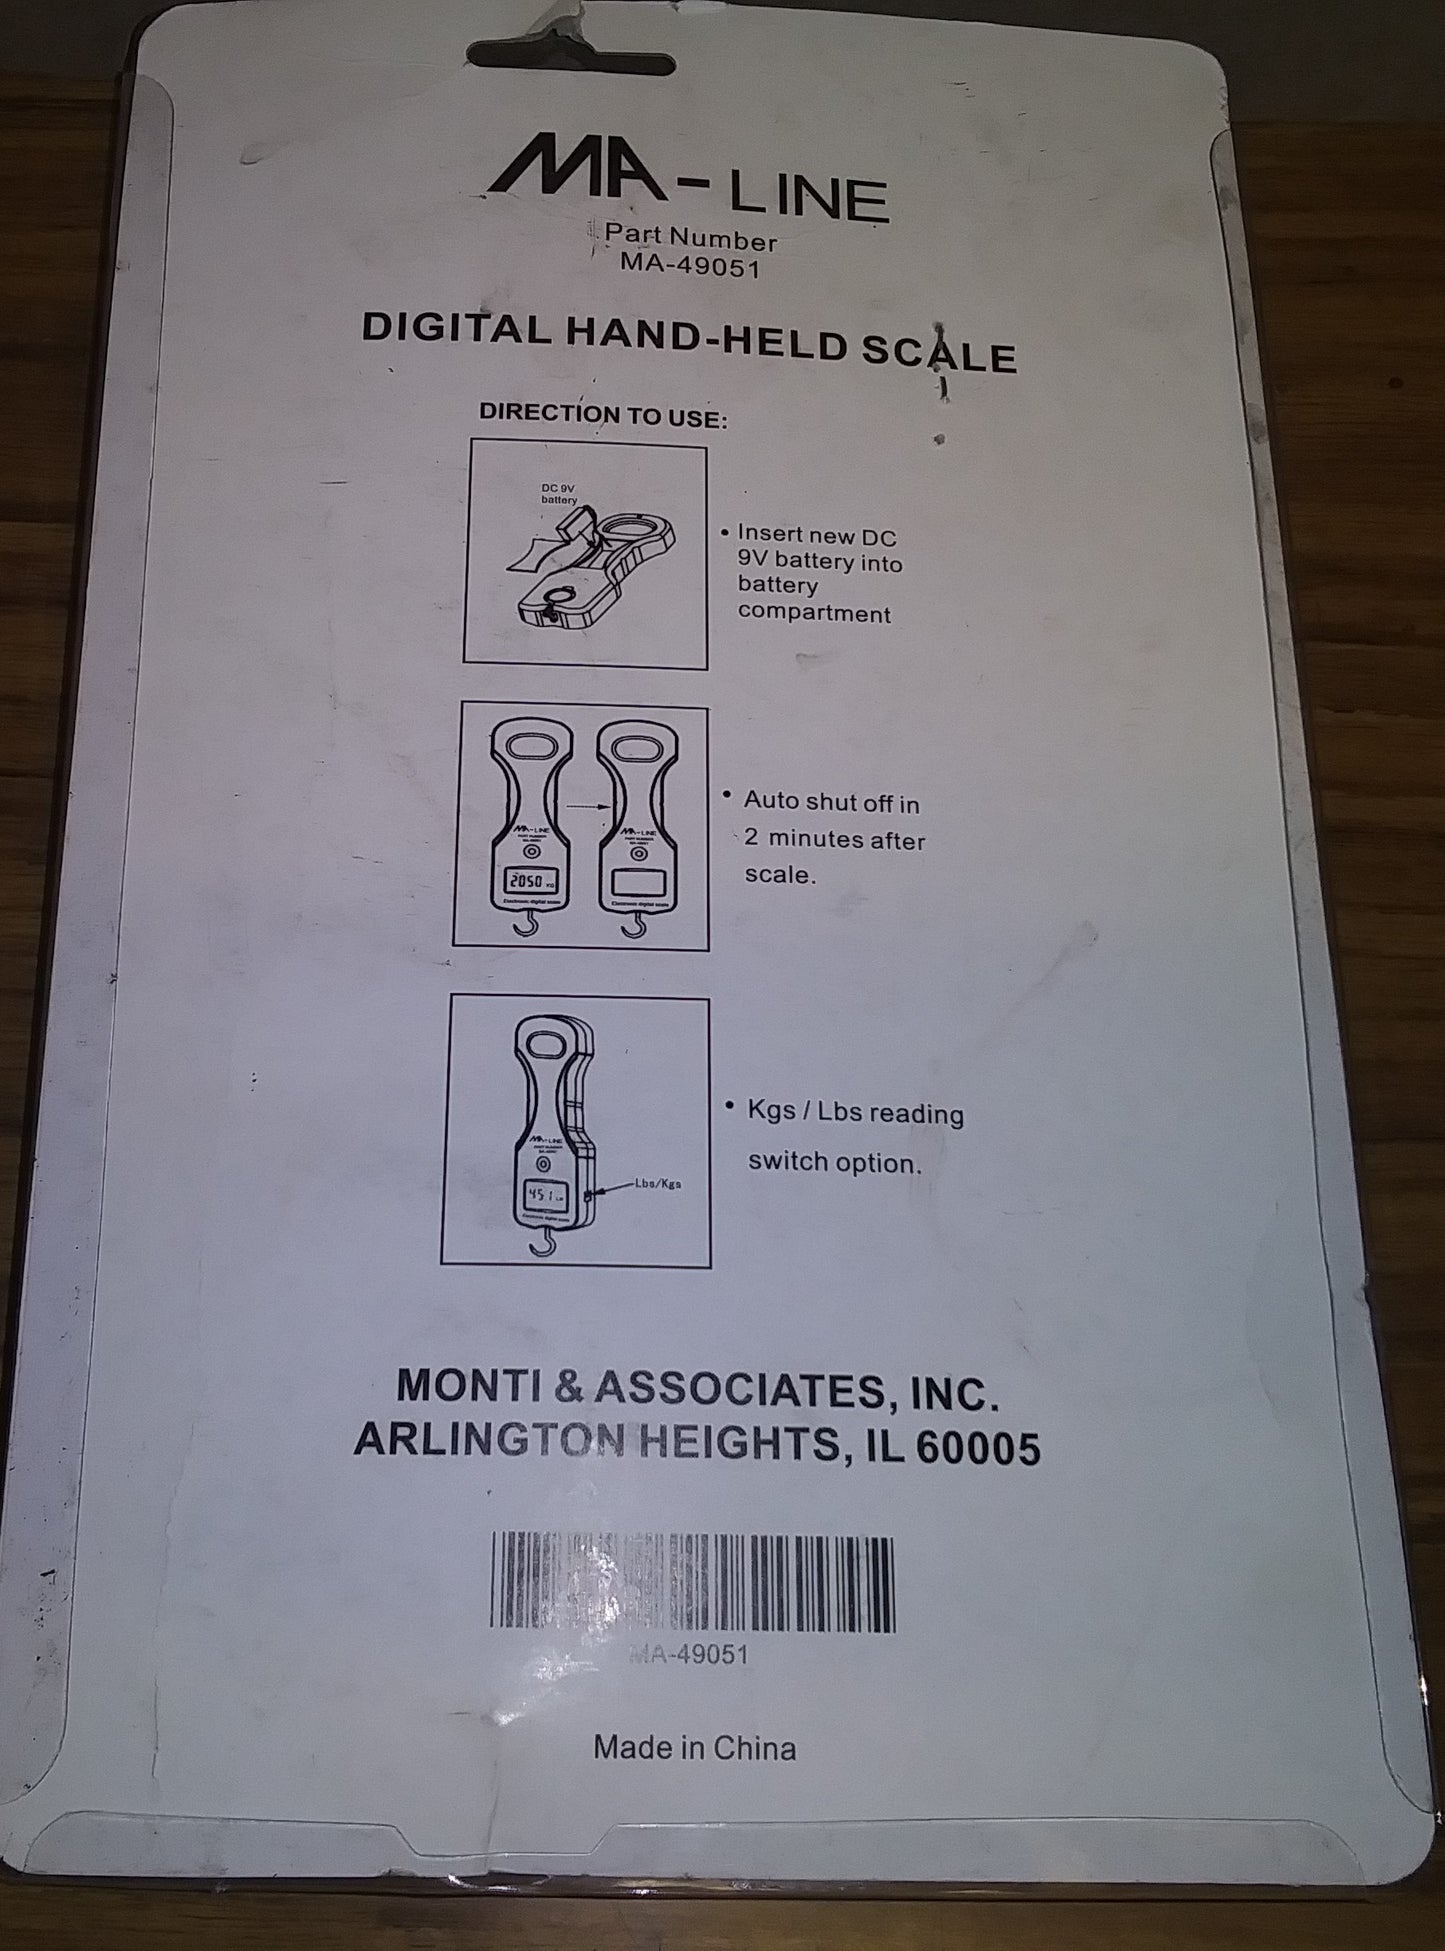 DIGITAL HAND-HELD SCALE